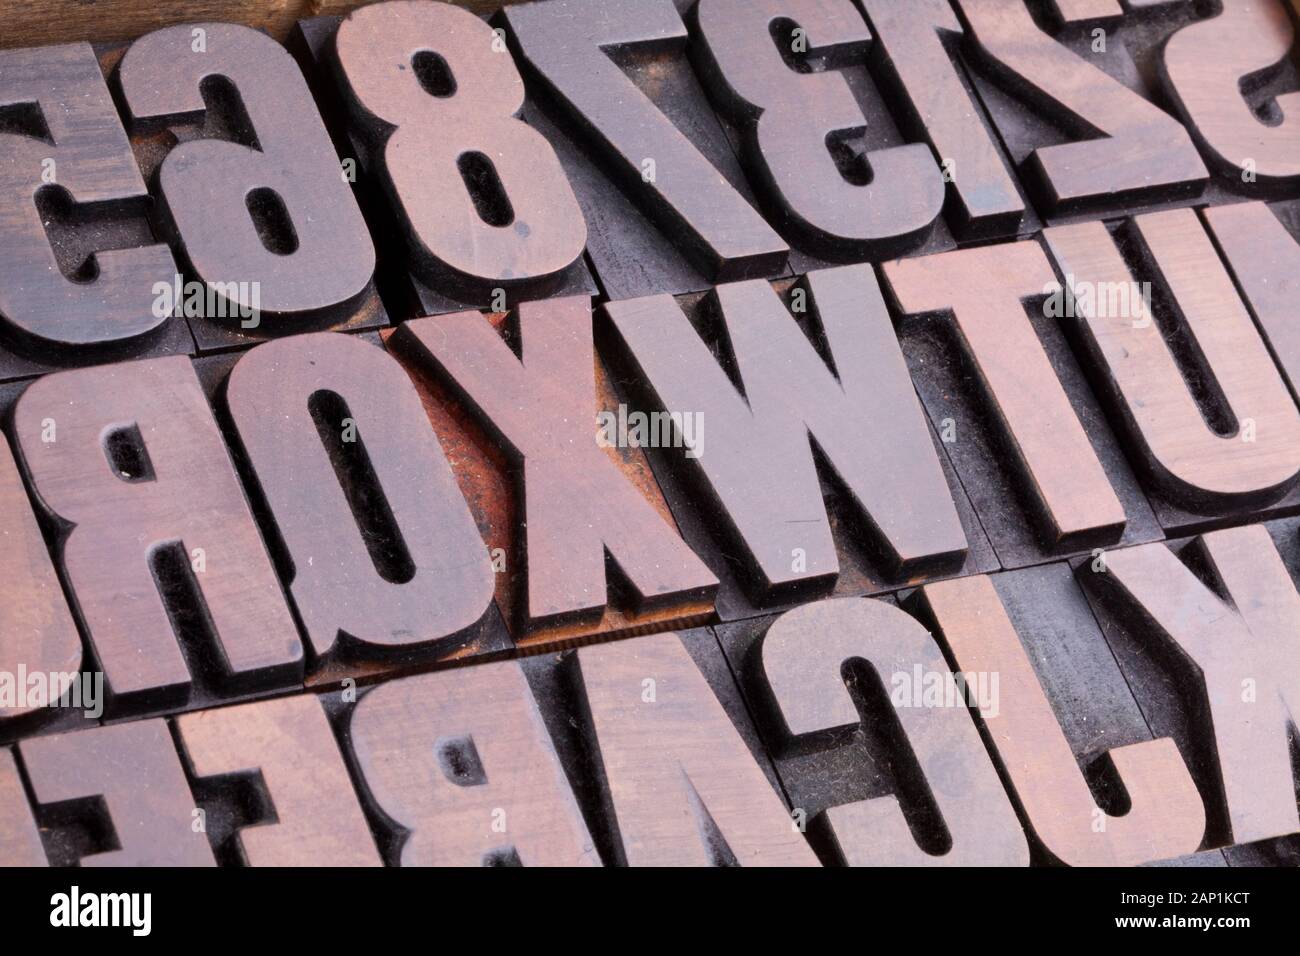 Buchstaben in eine Art Falle, block Buchstaben aus Holz Stockfoto